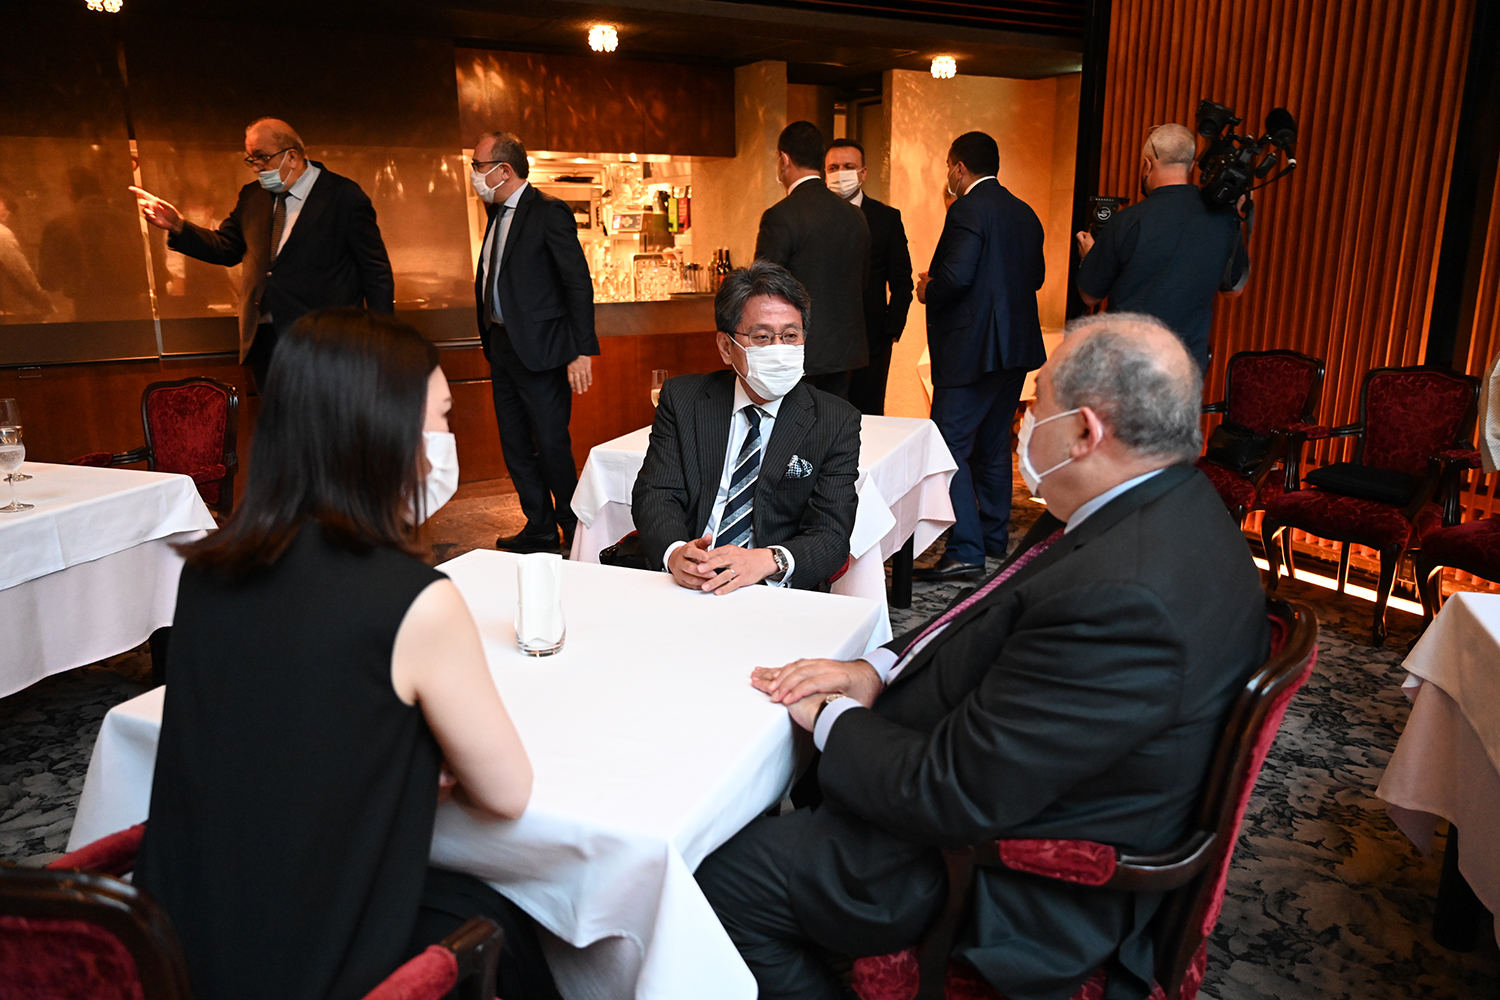 Նախագահ Սարգսյանը հանդիպում է ունեցել Միջազգային համագործակցության ճապոնական բանկի ղեկավարի հետ